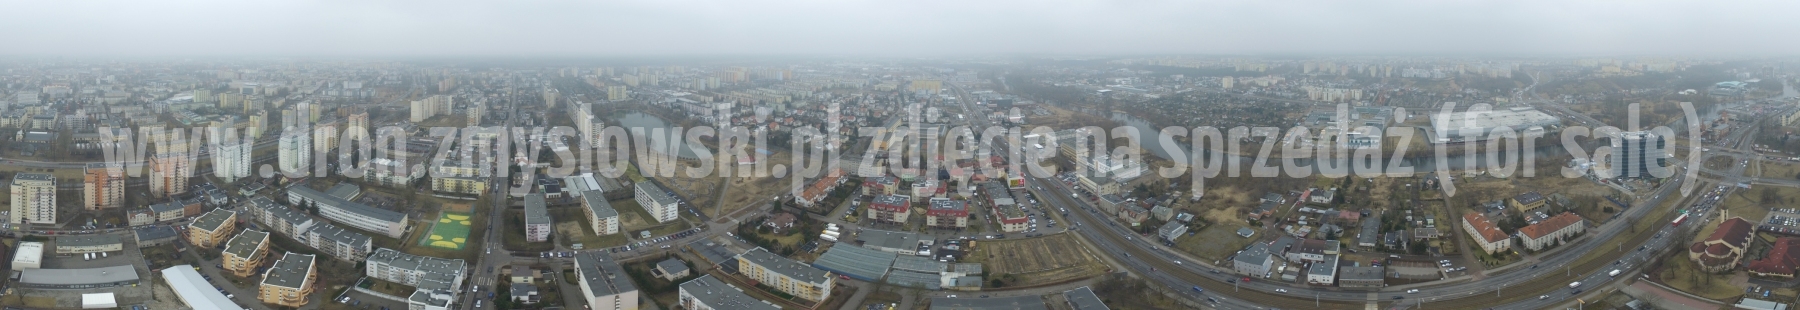 Bydgoszcz - rondo Fordońskie & restauracja Gerwazy z drona - 2018